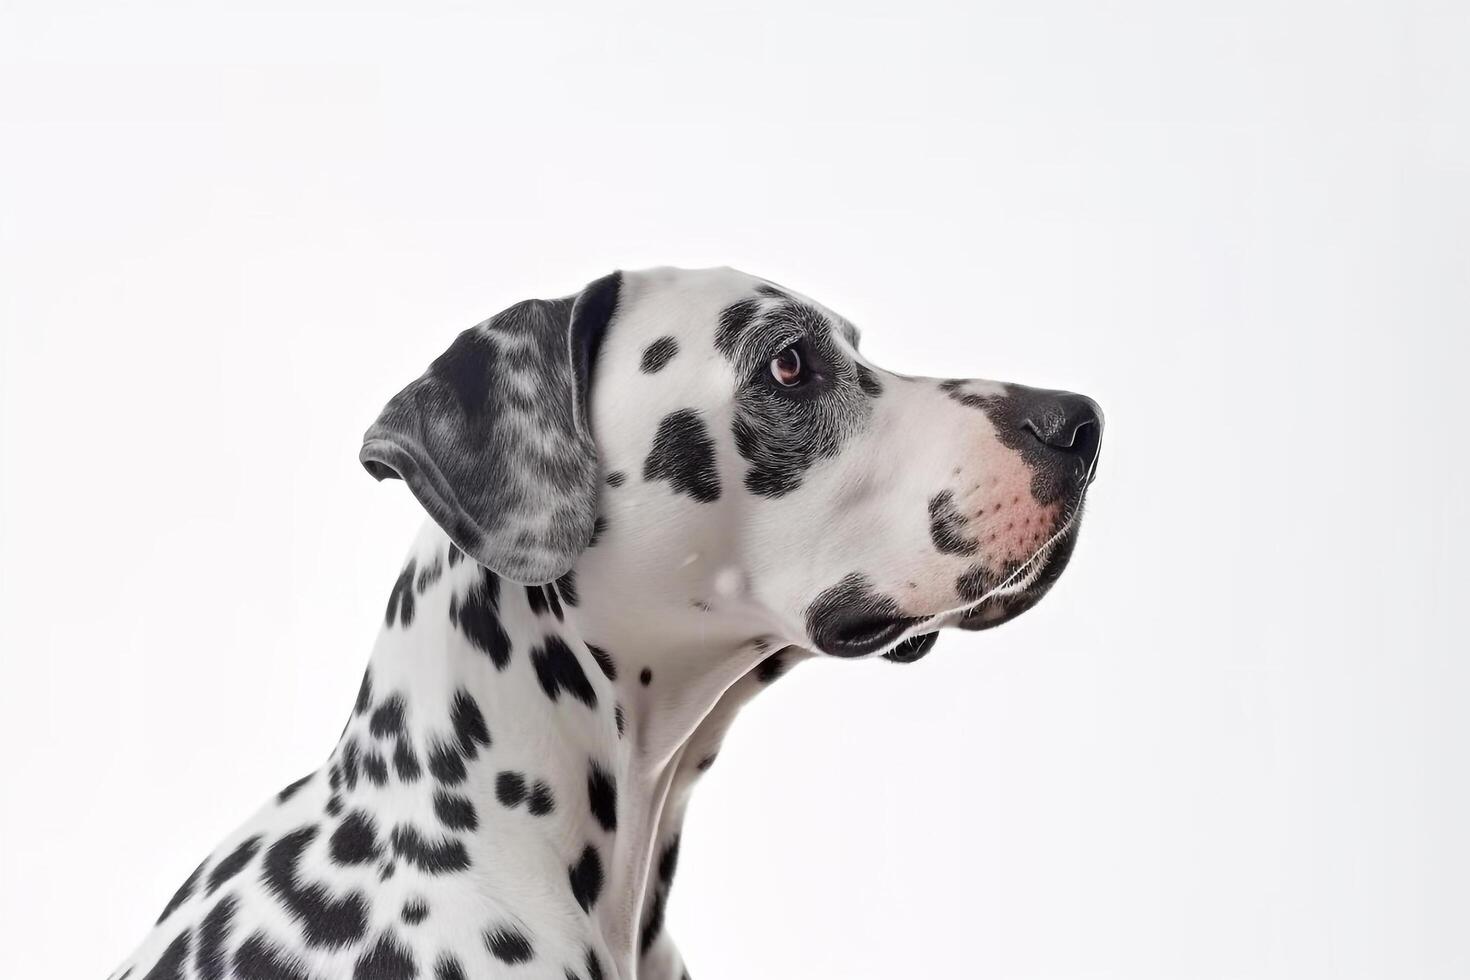 dalmatien chien isoler sur blanc arrière-plan.. photo